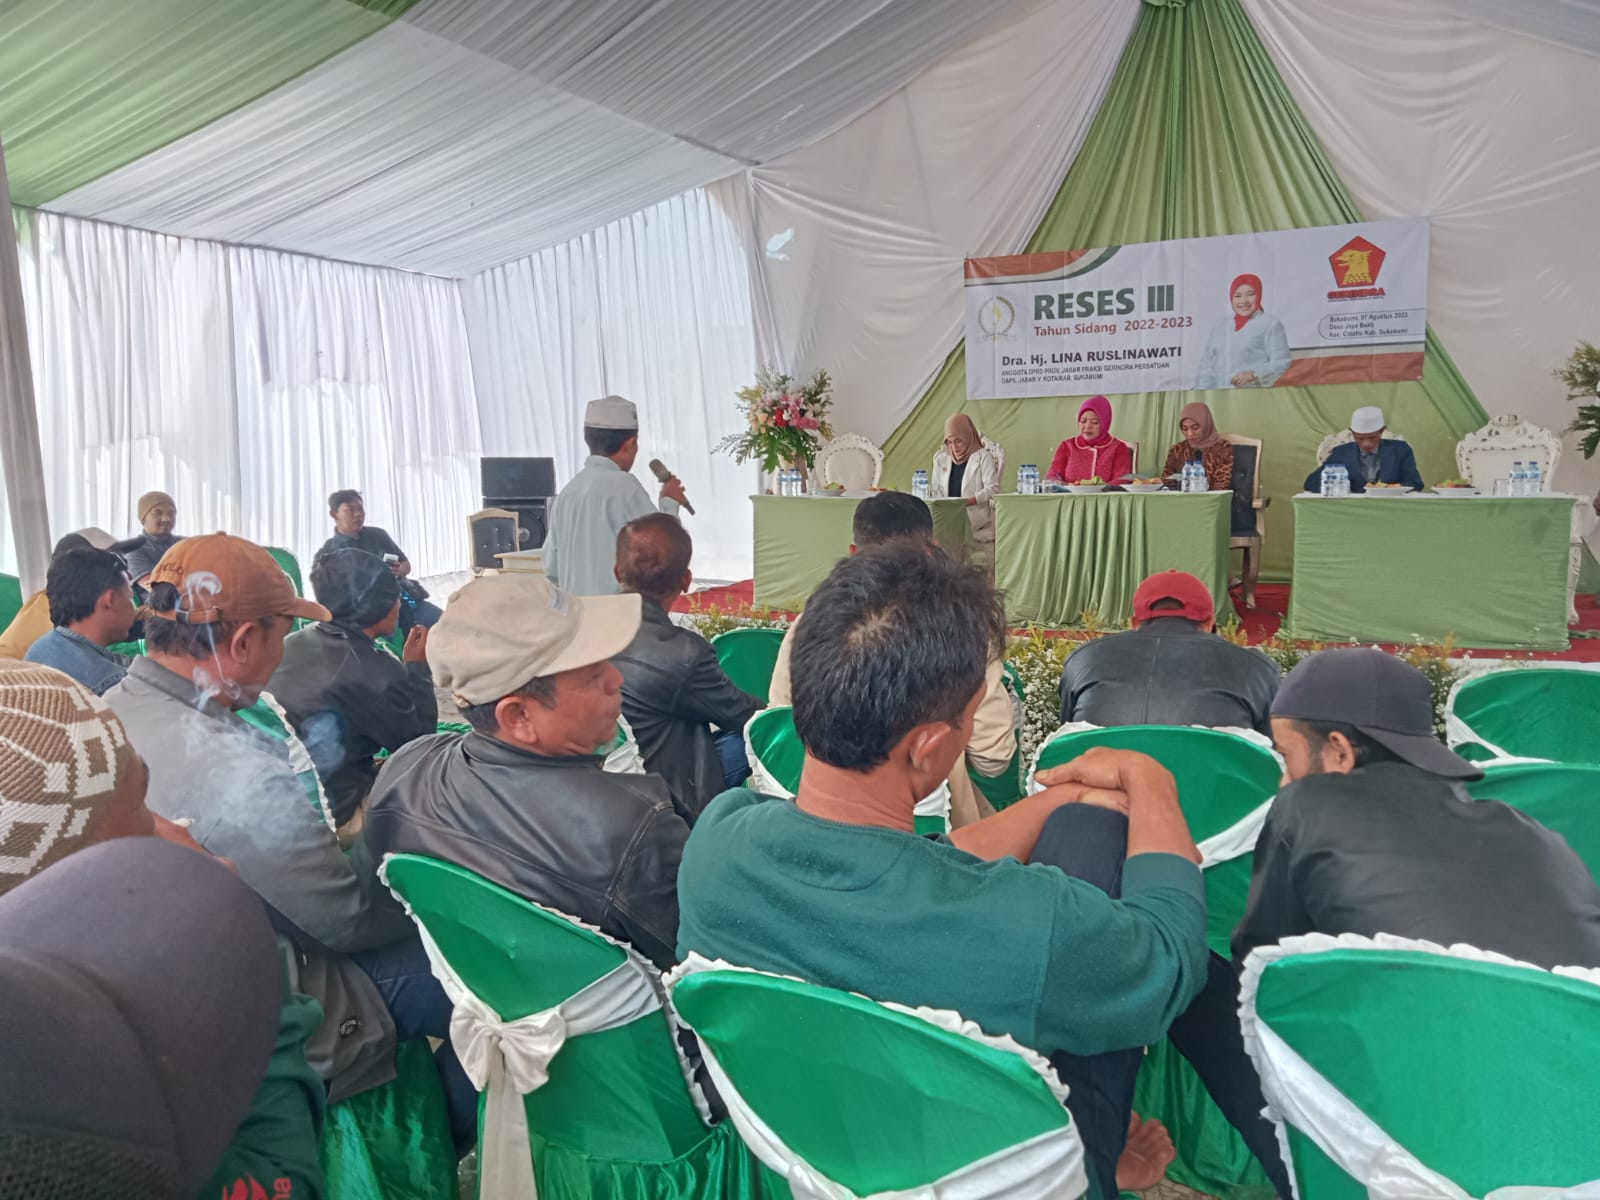 Anggota DPRD Provinsi Jawa Barat Fraksi Gerindra, Lina Ruslinawati  Kembali melakukan kegiatan reses  ke III Tahun Sidang 2022 – 2023 di Kecamatan Cidahu